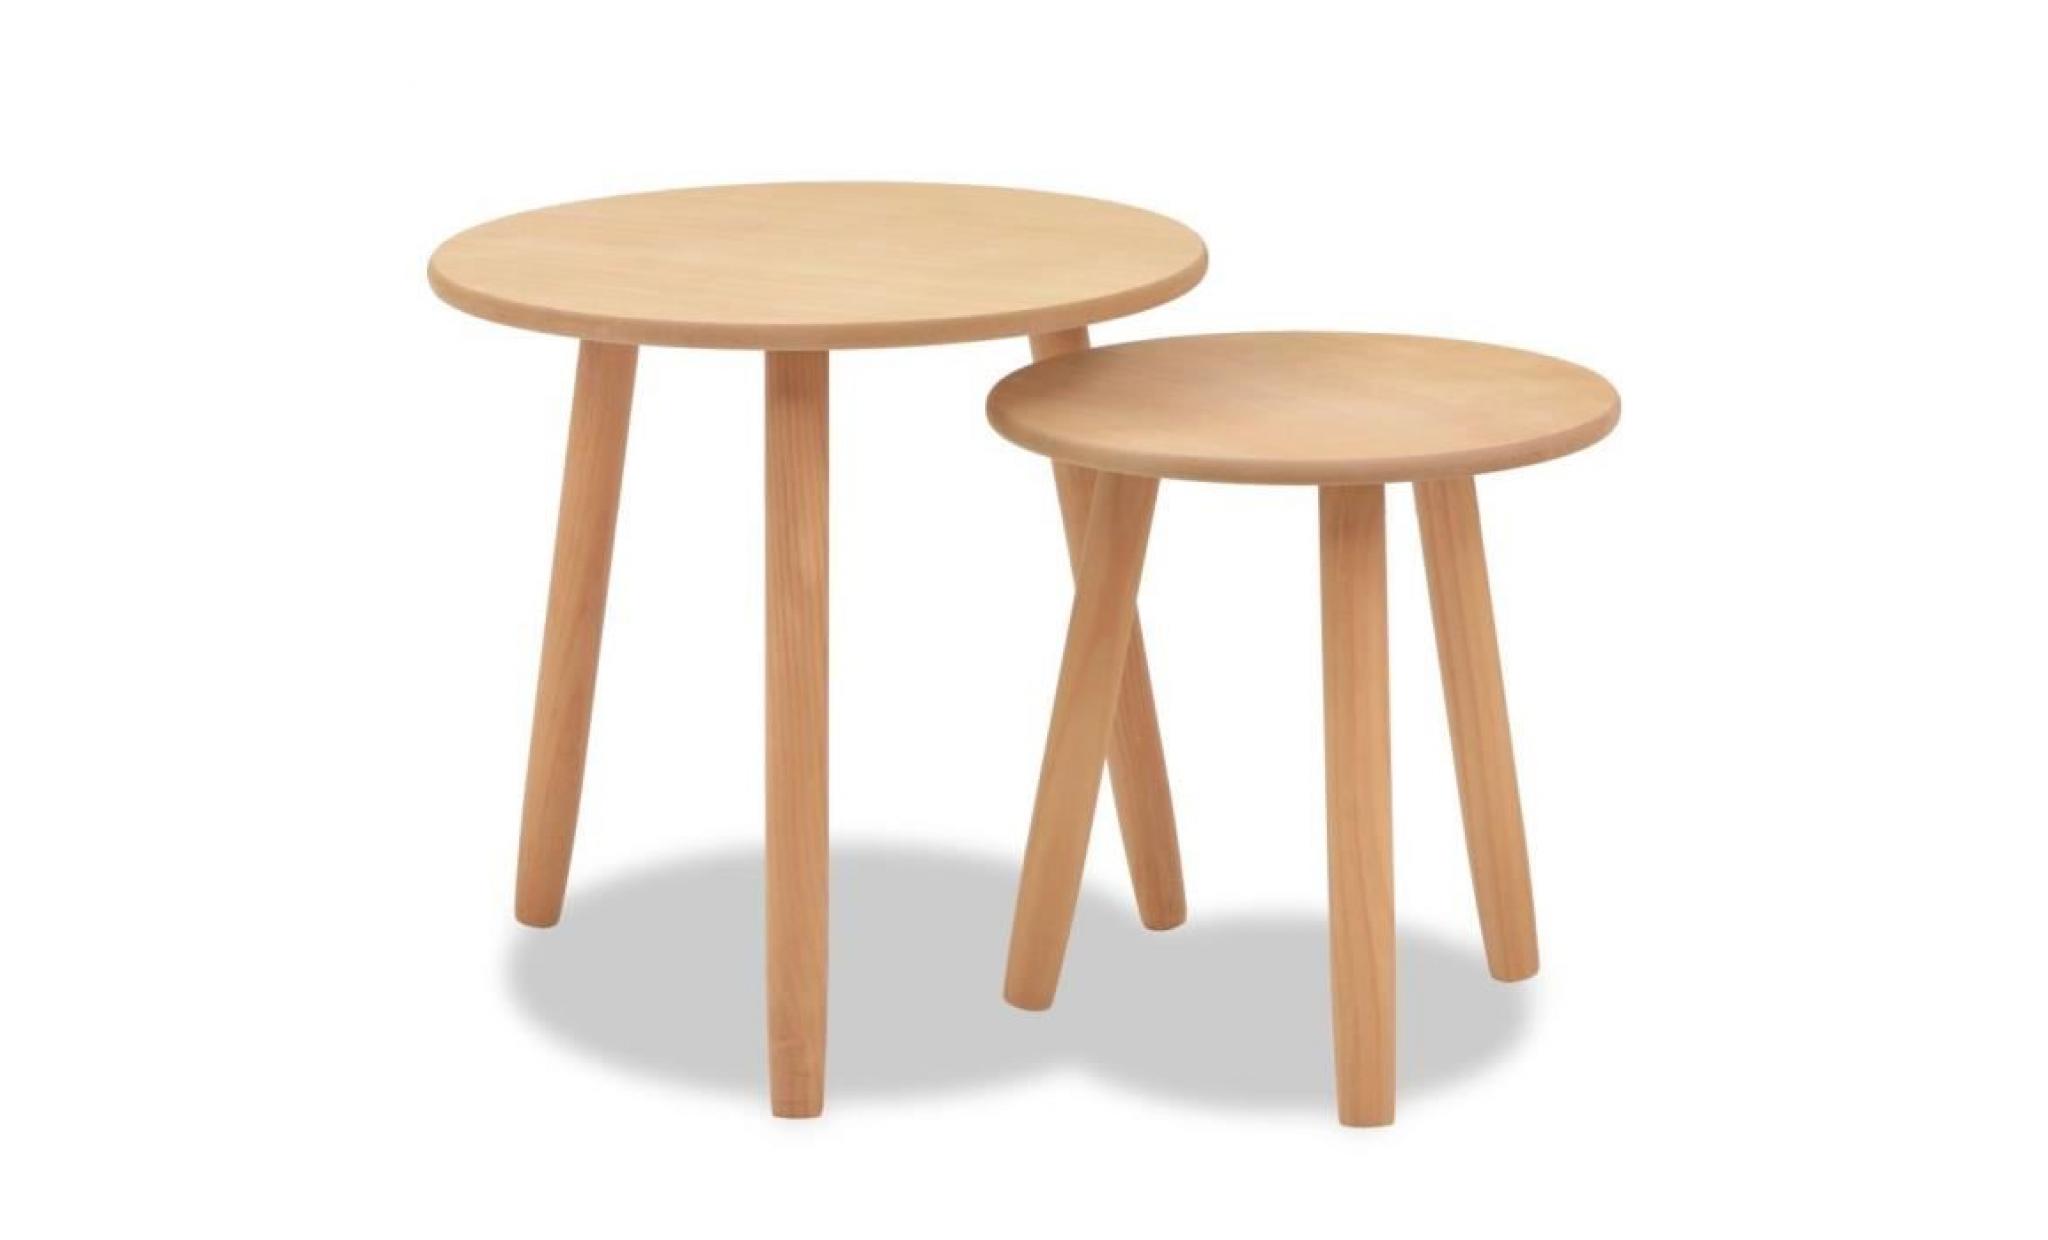 r196 cet ensemble se compose de deux tables d'appoint en bois qui sont fabriquees a partir du bois de pin massif avec un